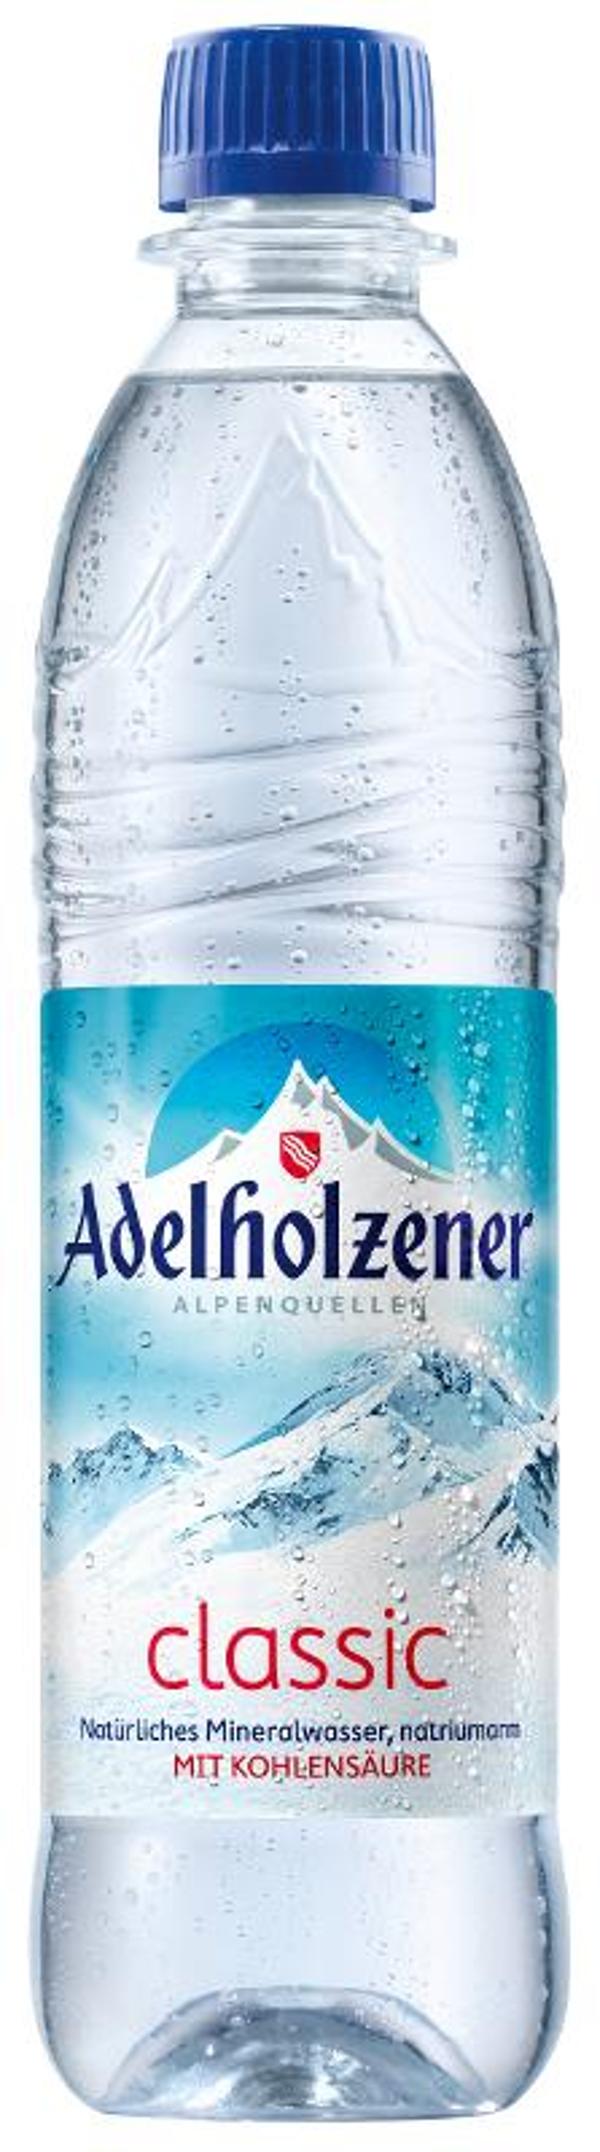 Produktfoto zu VPE Wasser Classic 12x0,5 l Adelholzener Alpenquellen